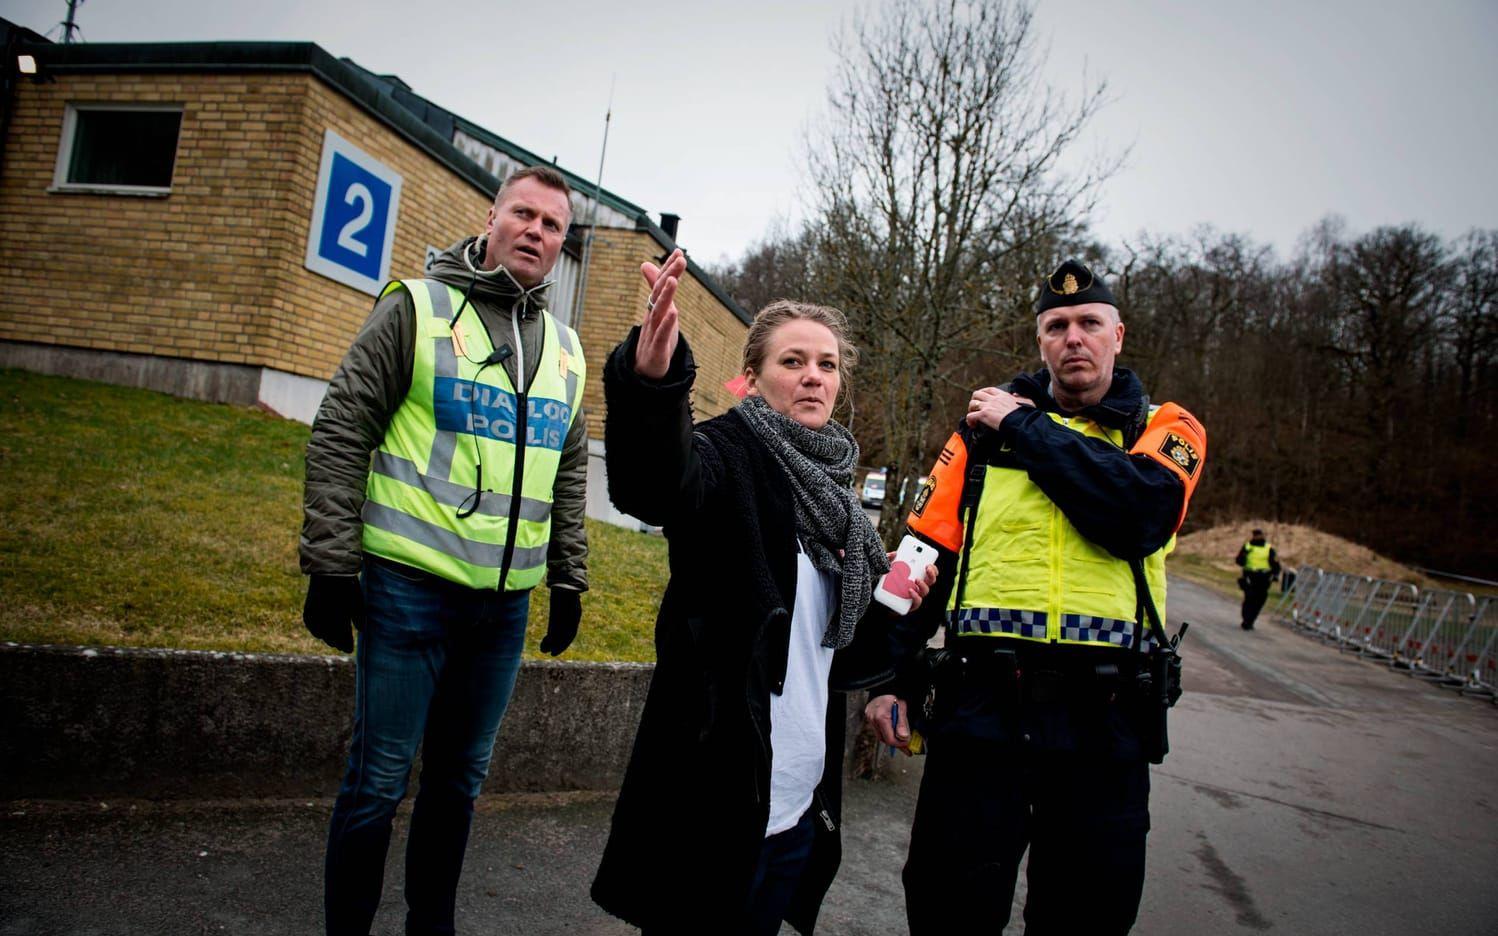 Helena Mäki önskar att polisen kunde ta bort kravallstaketen då de väcker mycket känslor. Bild: Jonas Lindstedt